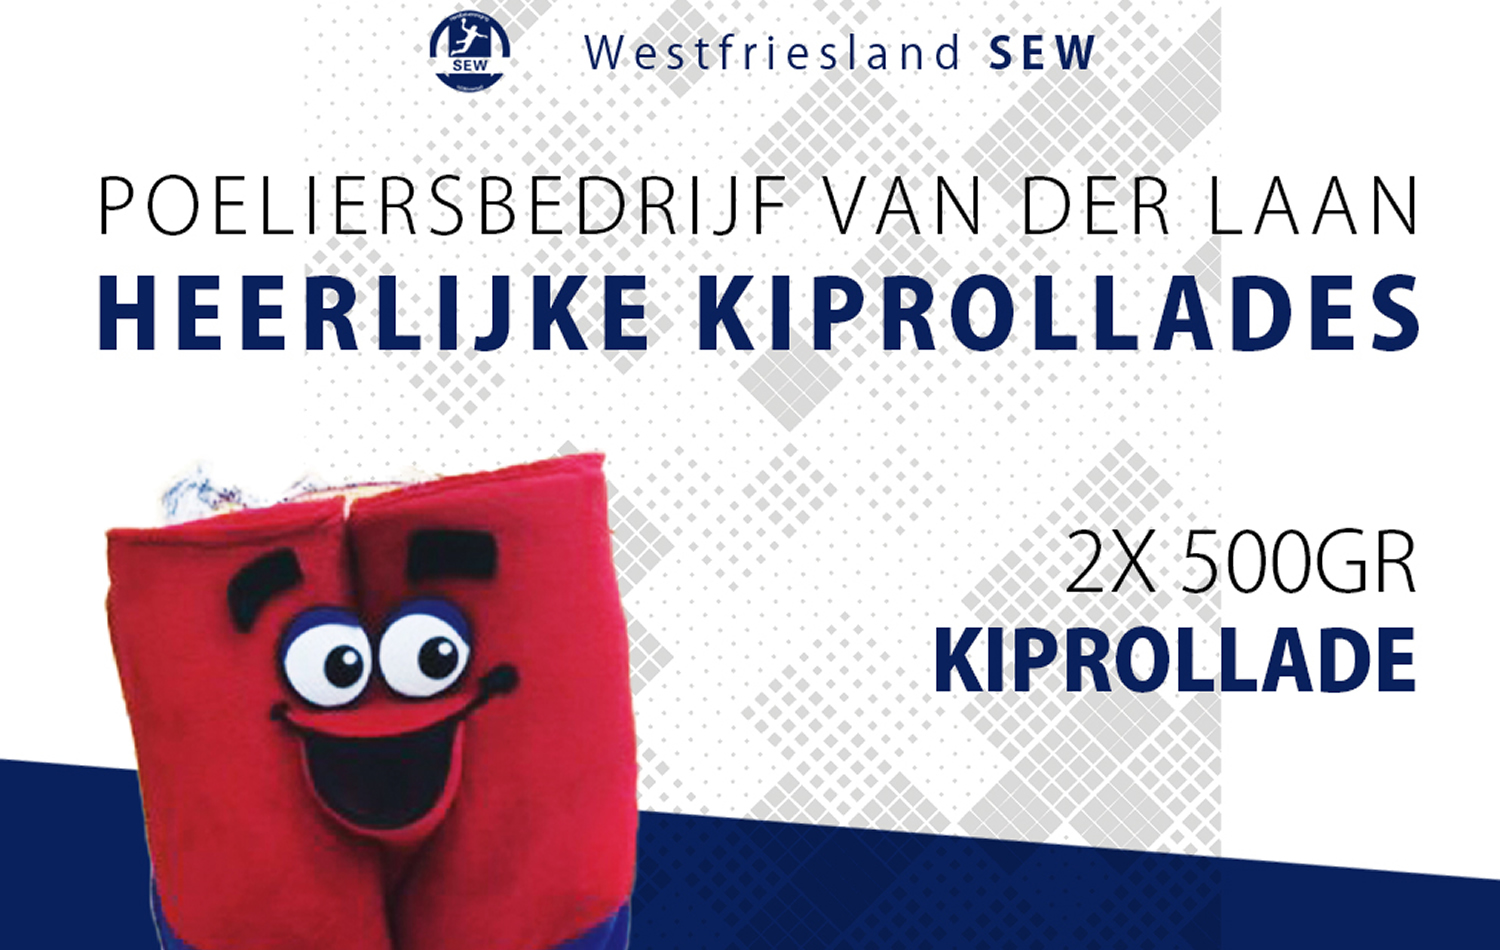 Westfriesland/SEW komt weer met de ‘Heerlijke kiprollade voor Pinksteren!’ actie